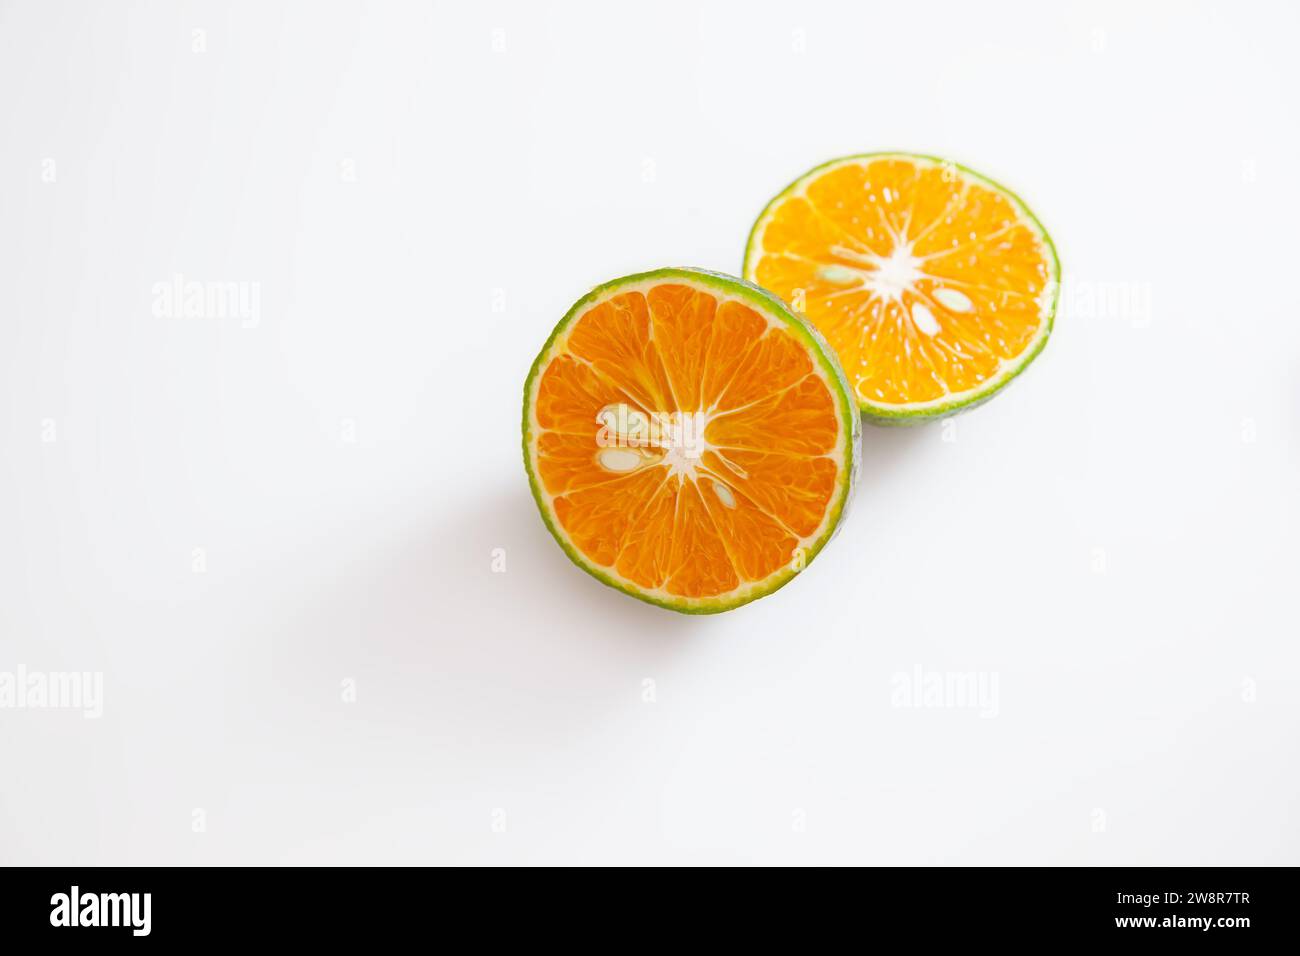 Arancia con buccia verde tagliata a metà isolata su sfondo bianco Foto Stock